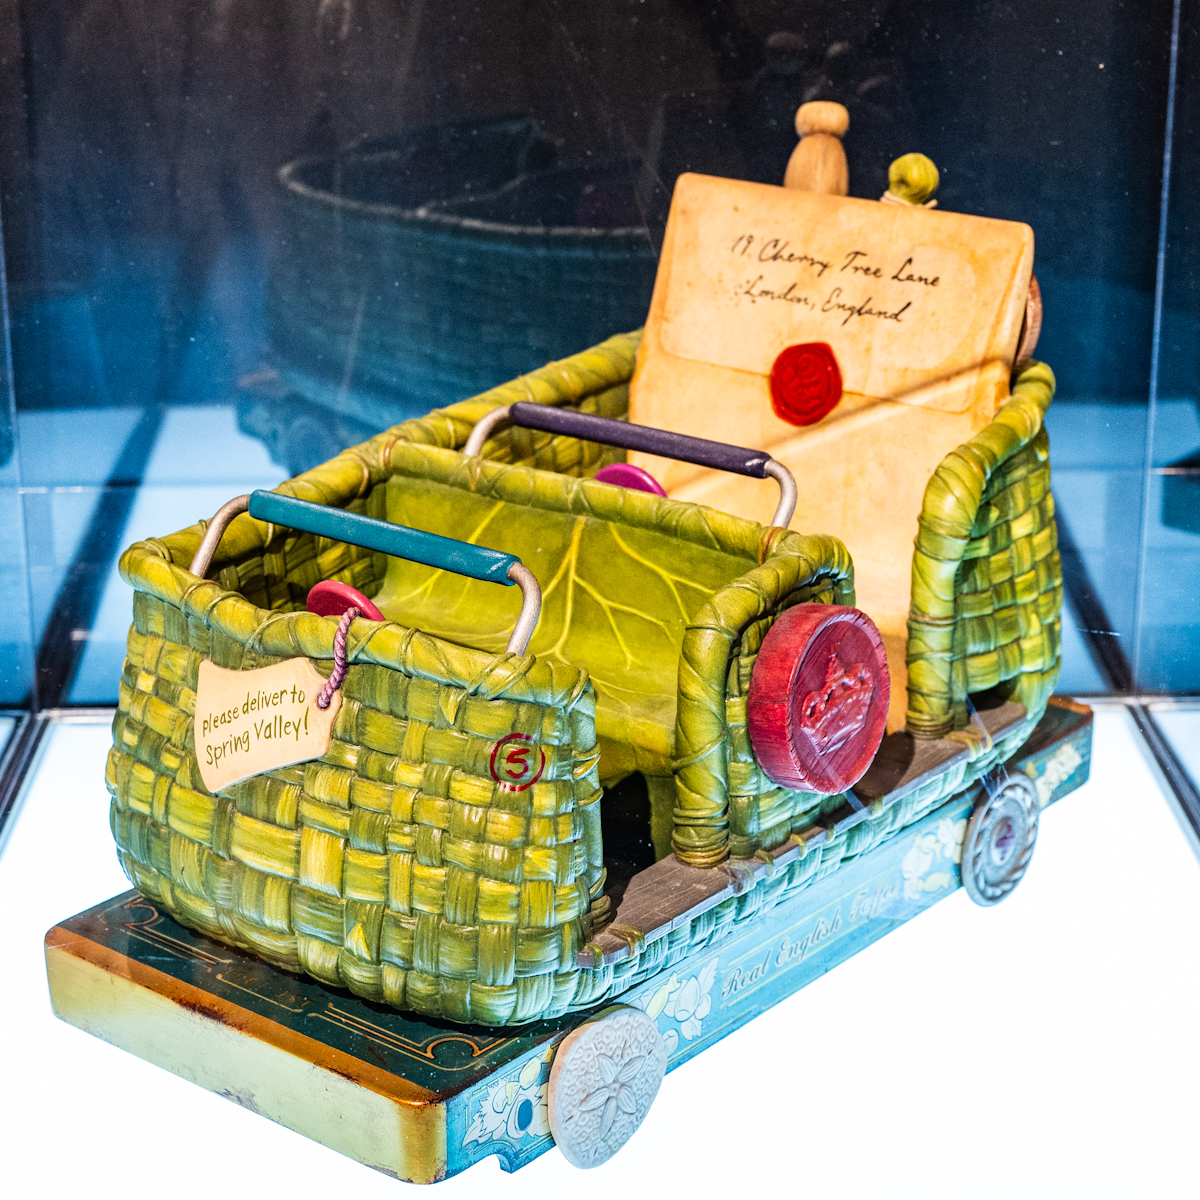 「ピーターパンのネバーランド」アトラクション「フェアリー・ティンカーベルのビジーバギー」ライド模型